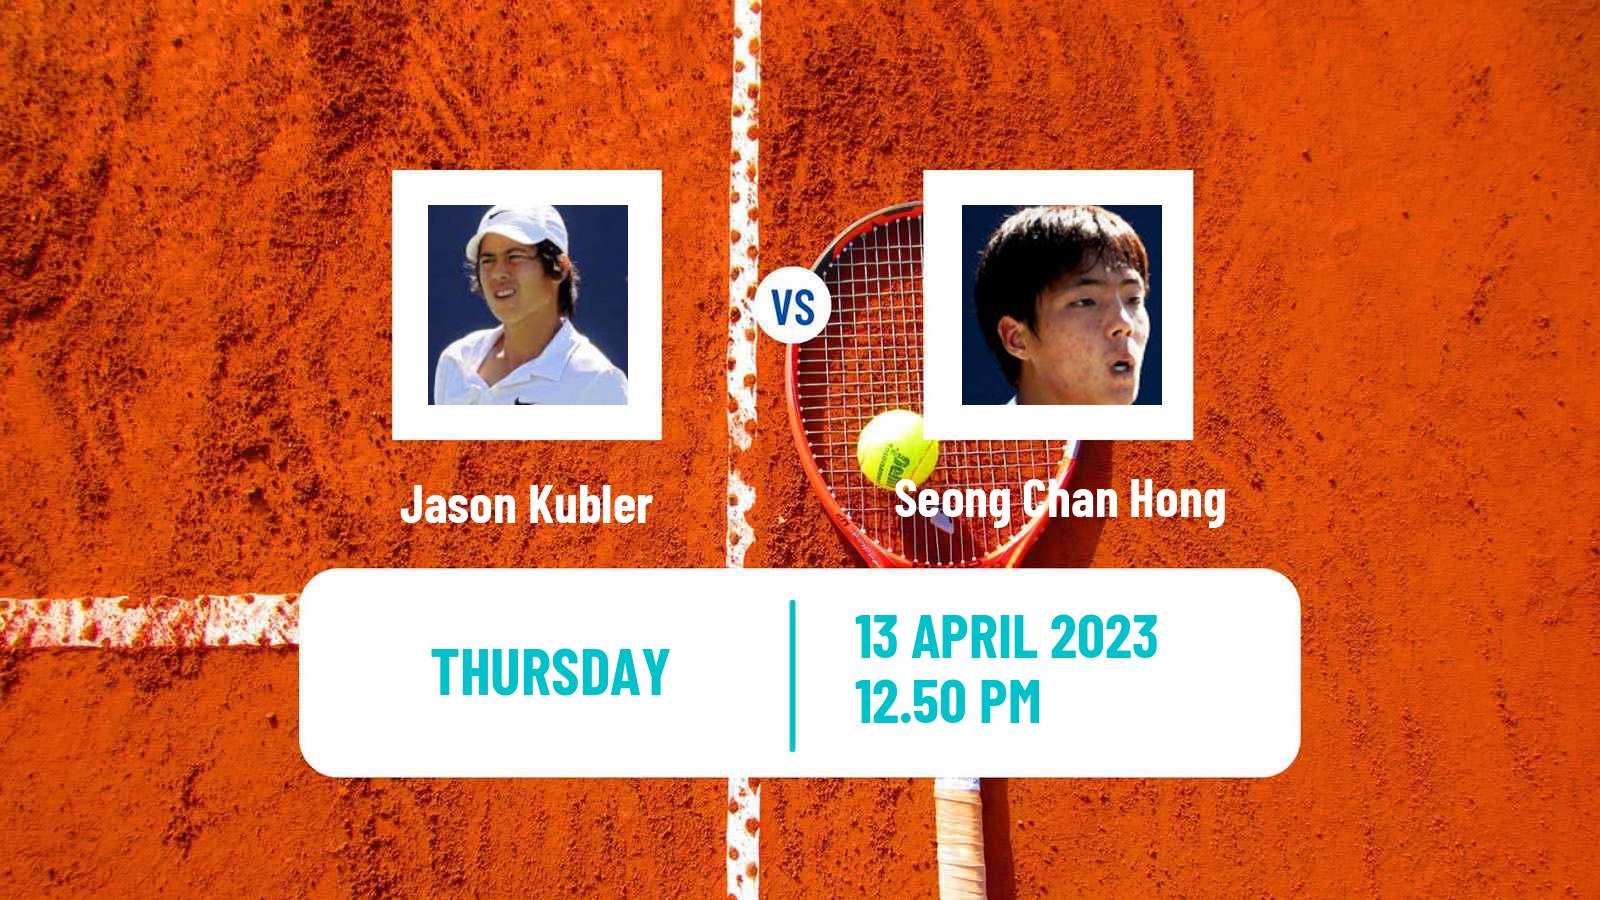 Tennis ATP Challenger Jason Kubler - Seong Chan Hong